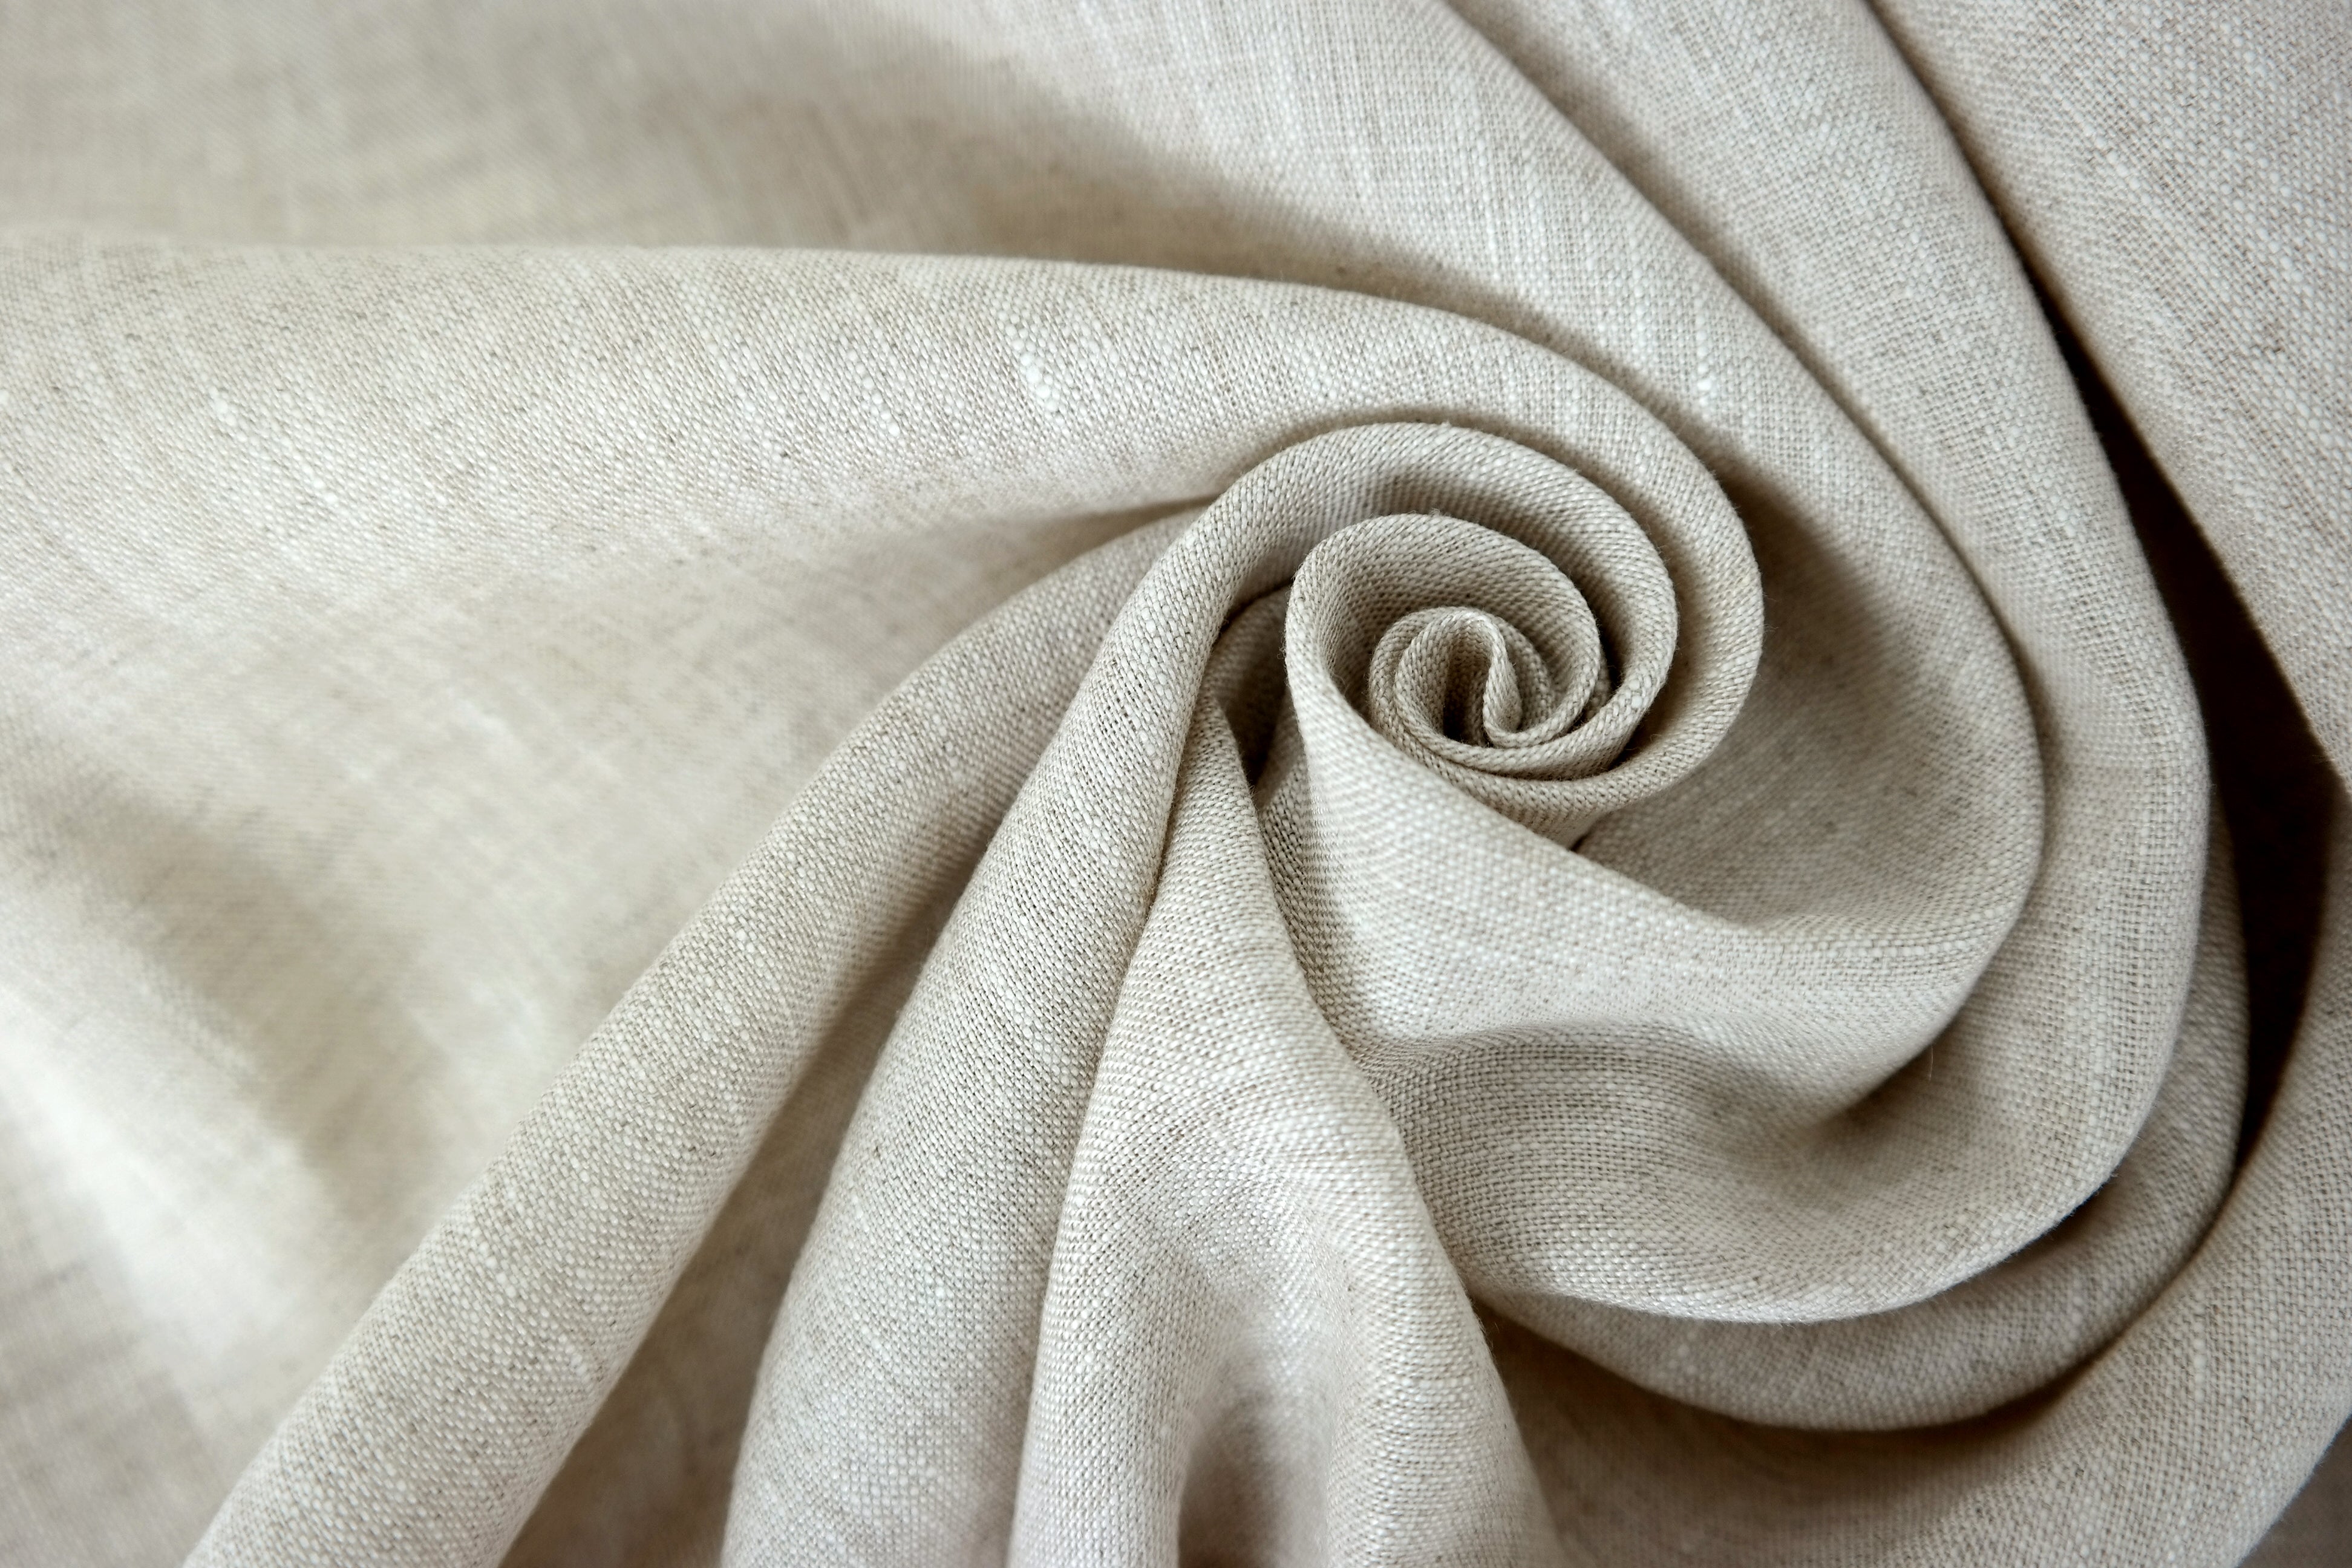 100% Linen Fabric Medium Weight Soft Touch 14S - The Linen Lab - Light natural